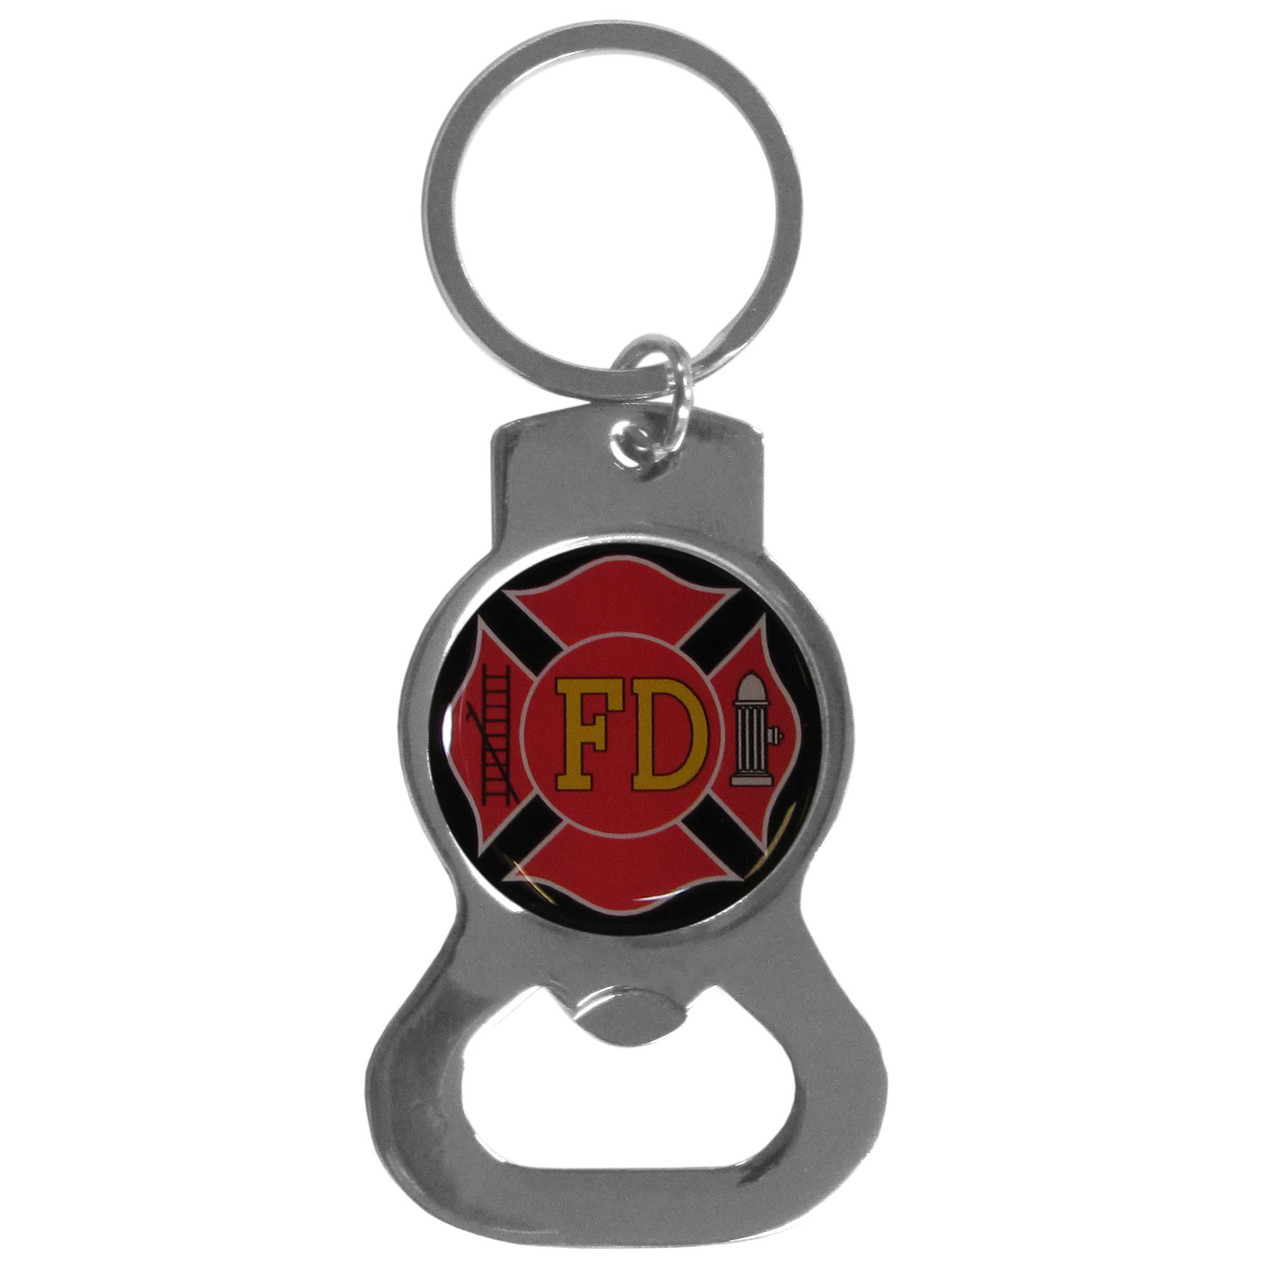 Firefighter Bottle Opener Key Chain - Sunset Key Chains